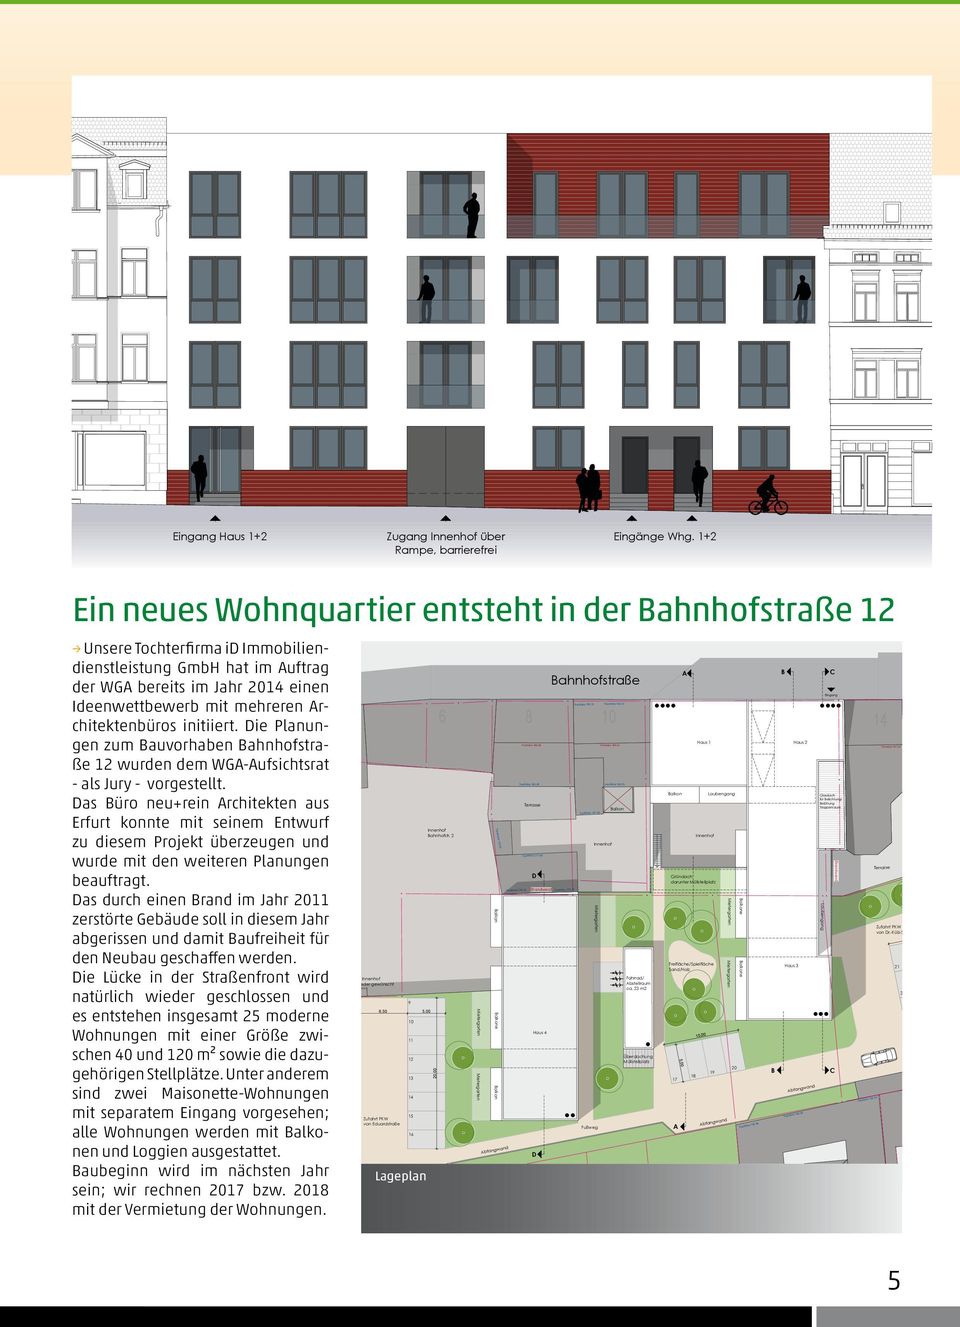 Architektenbüros initiiert. Die Planungen zum Bauvorhaben Bahnhofstraße 12 wurden dem WGA-Aufsichtsrat - als Jury - vorgestellt.